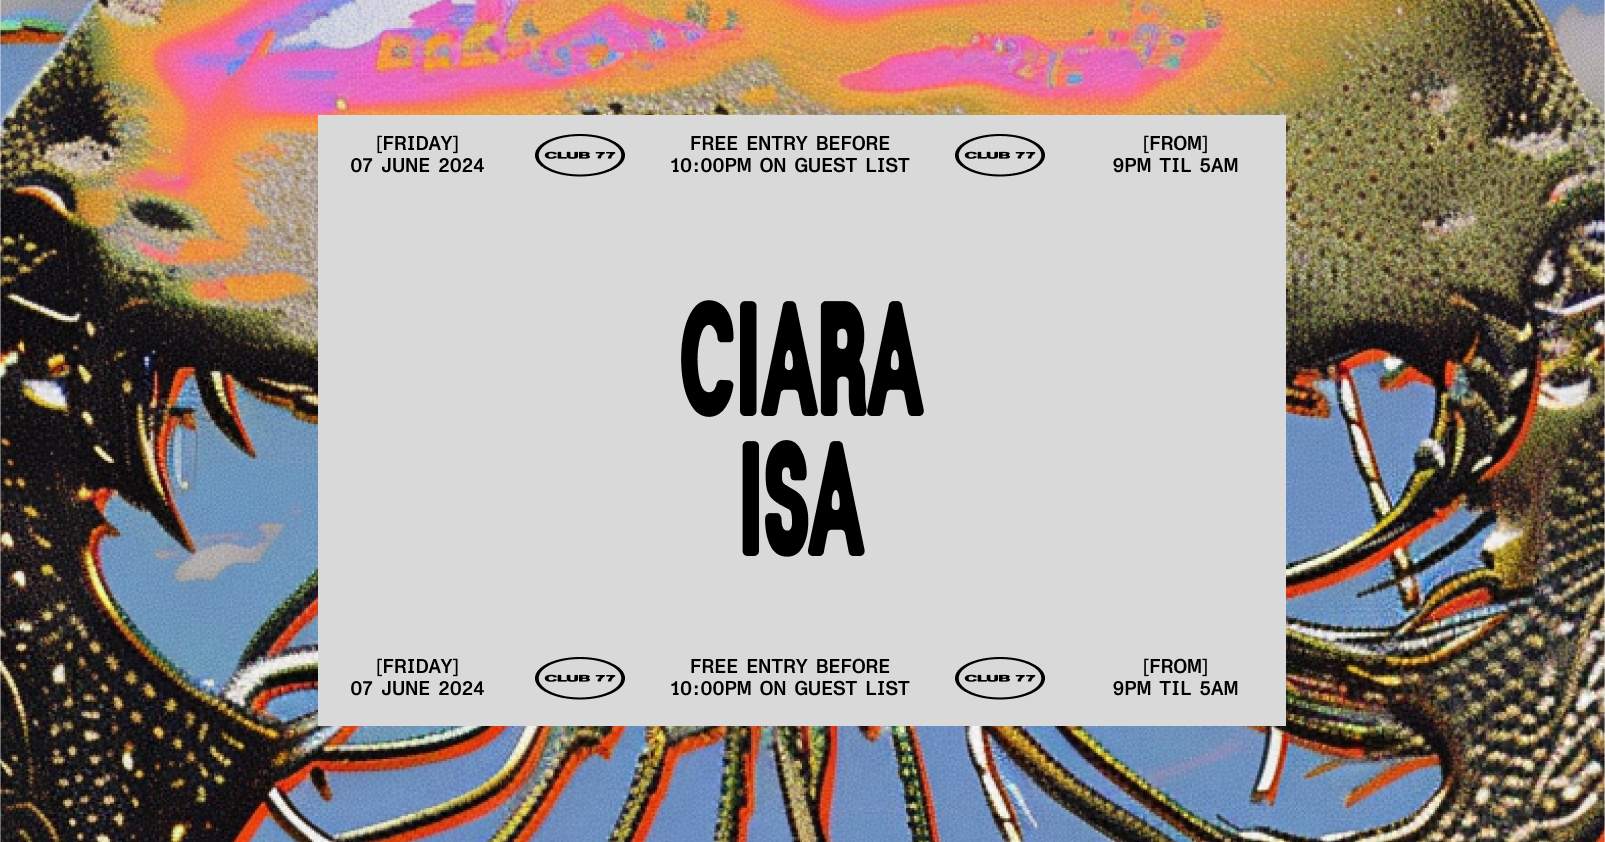 Fridays at 77: Ciara, Isa - フライヤー表